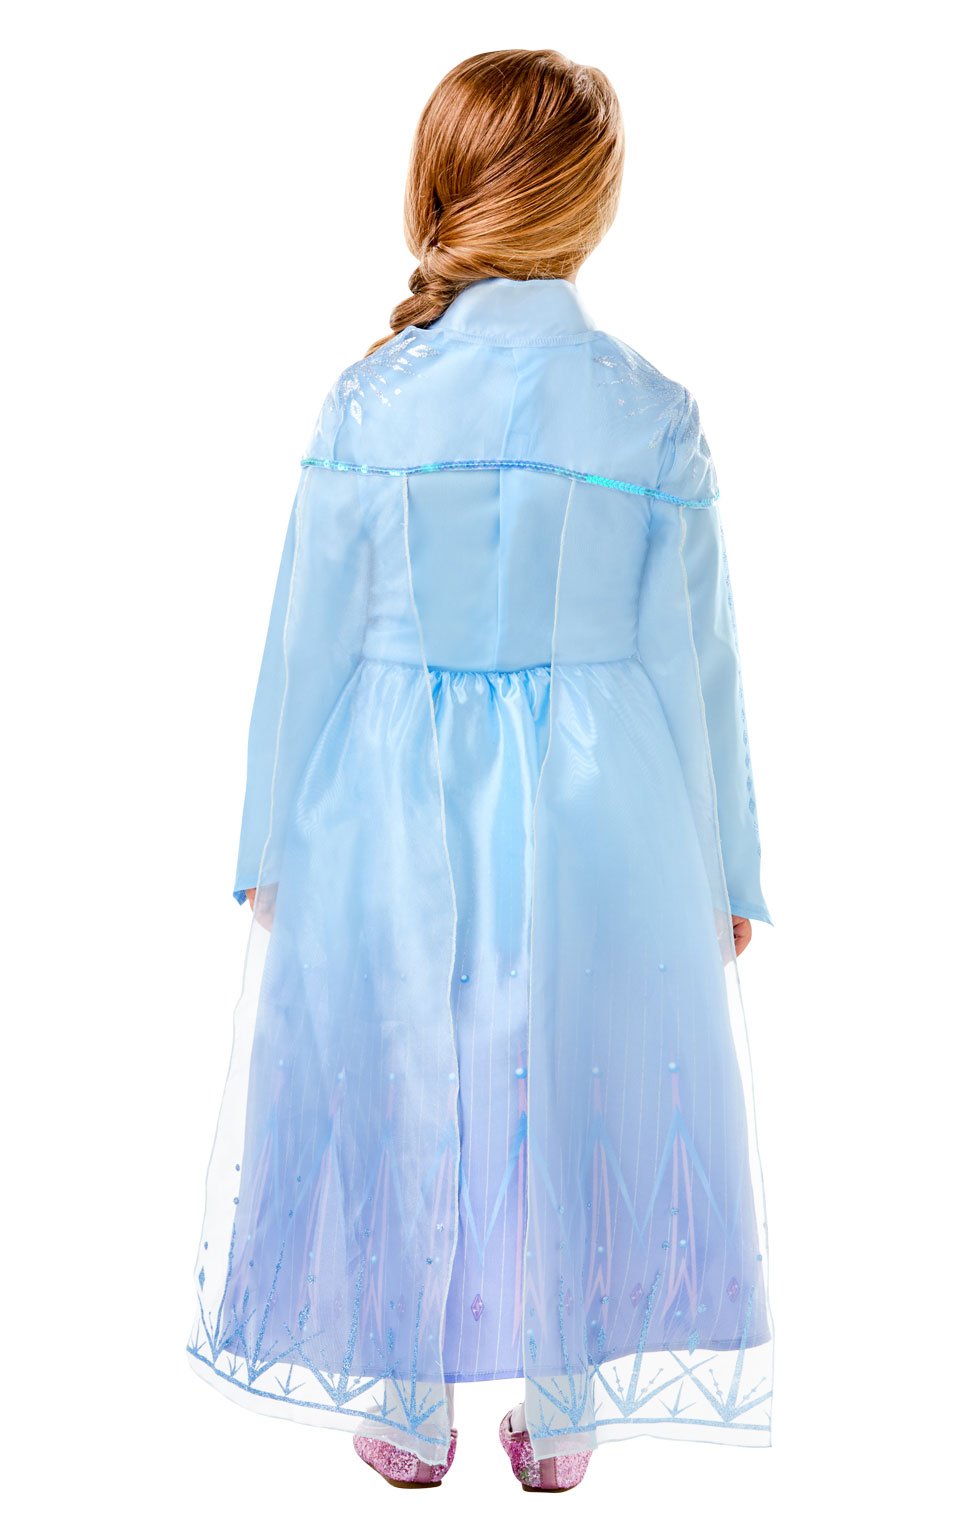 Deluxe Disney Frozen 2 Girls Elsa Costume